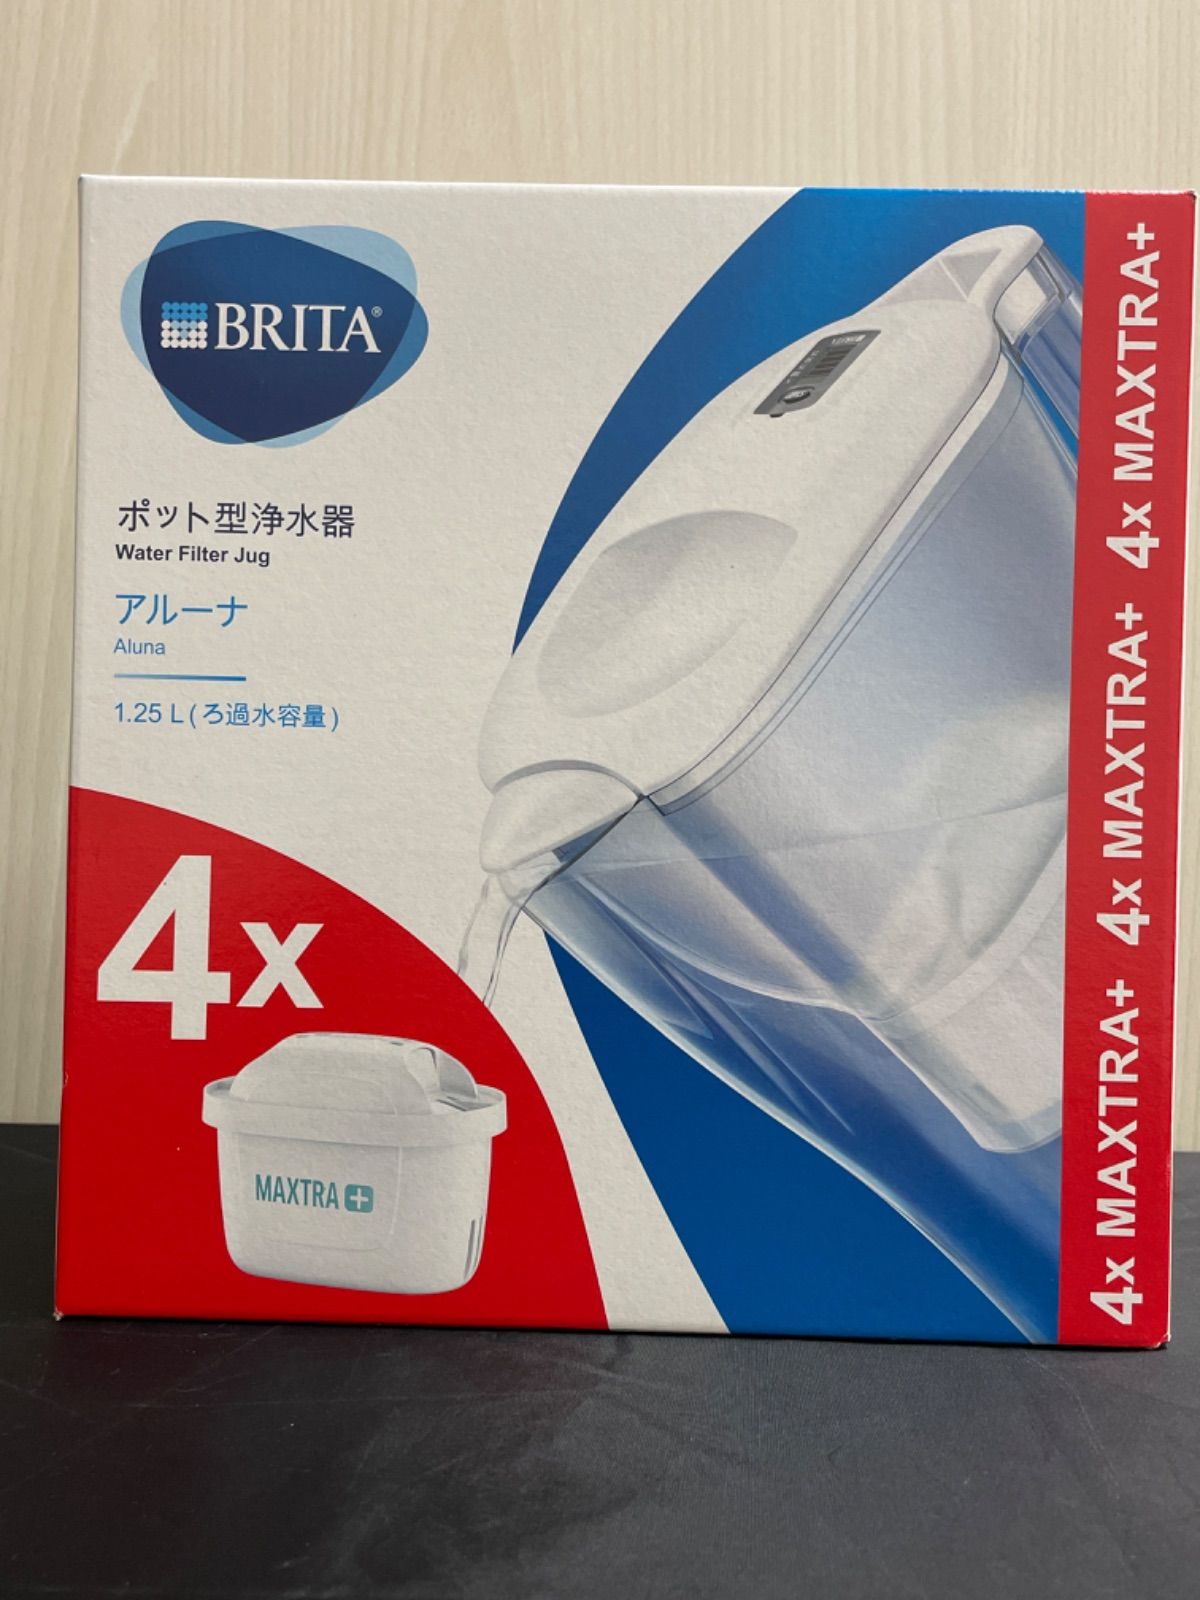 ブリタ/BRITA ポット型浄水器 アルーナ 2.4L カートリッジ4個入り